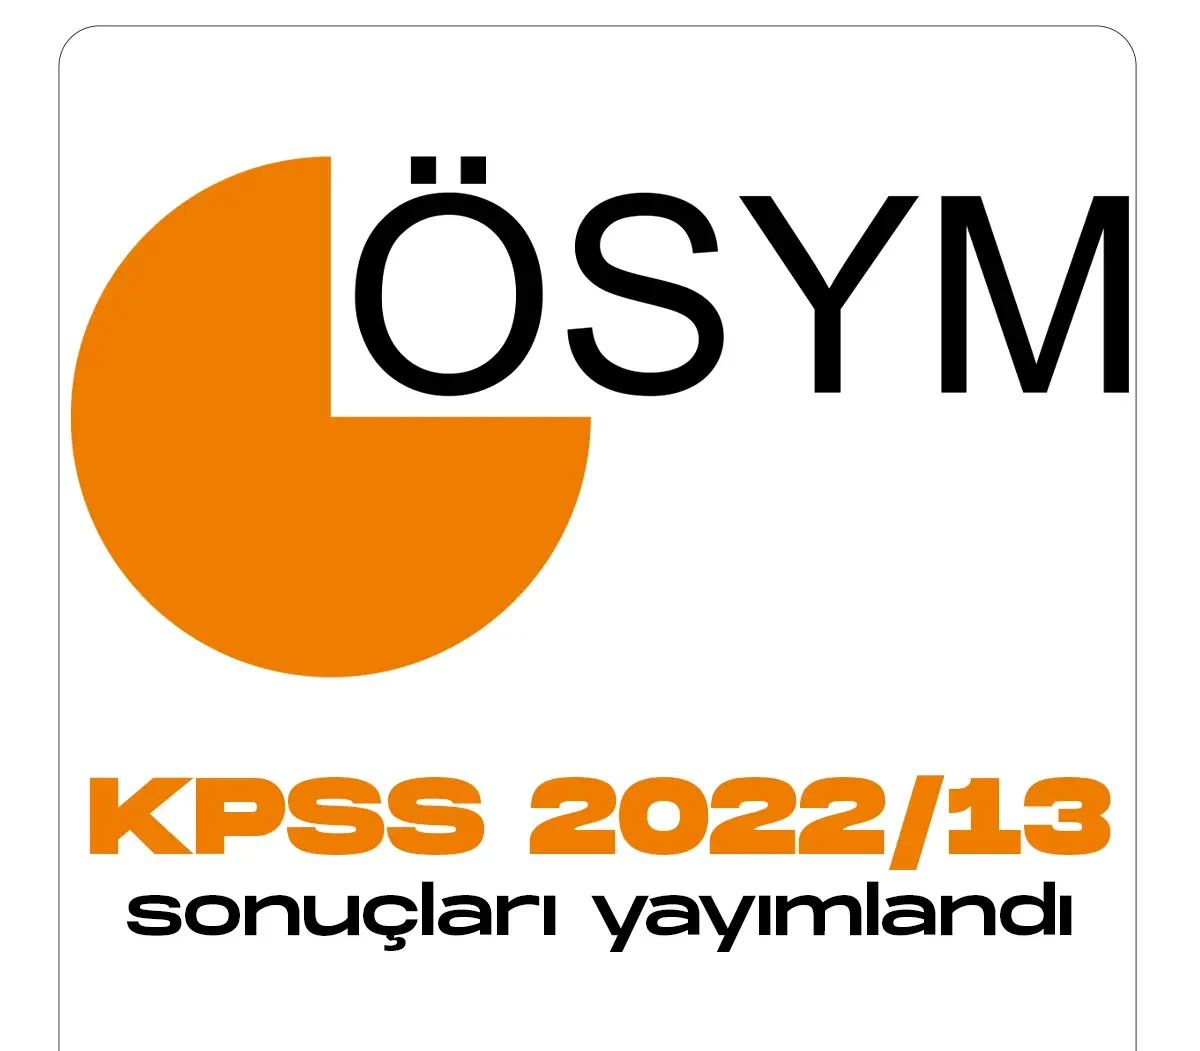 ÖSYM tarafından KPSS 2022 13 Tercih sonuçları duyurusu yayımlandı.